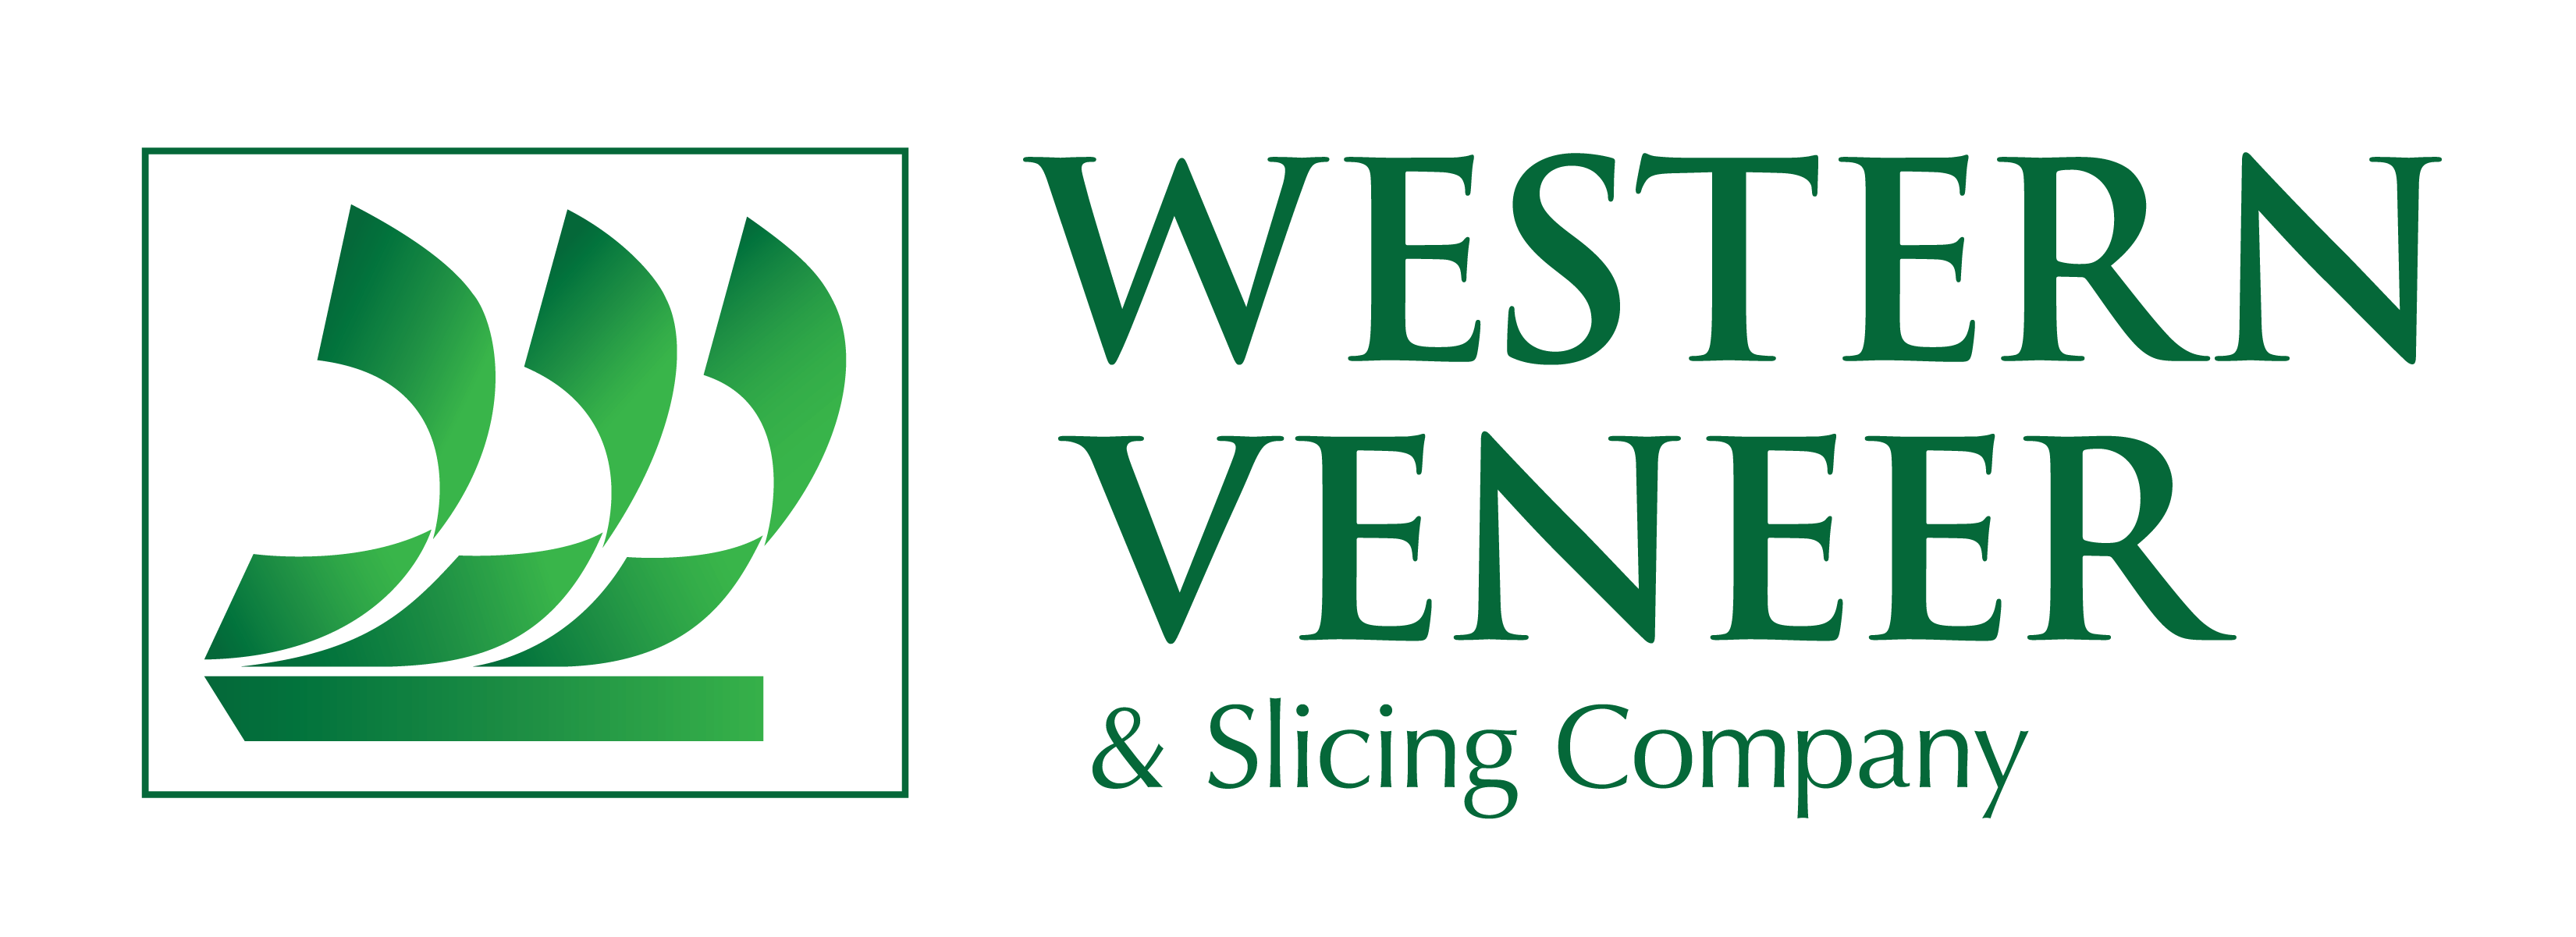 Western Veneer & Slicing logo